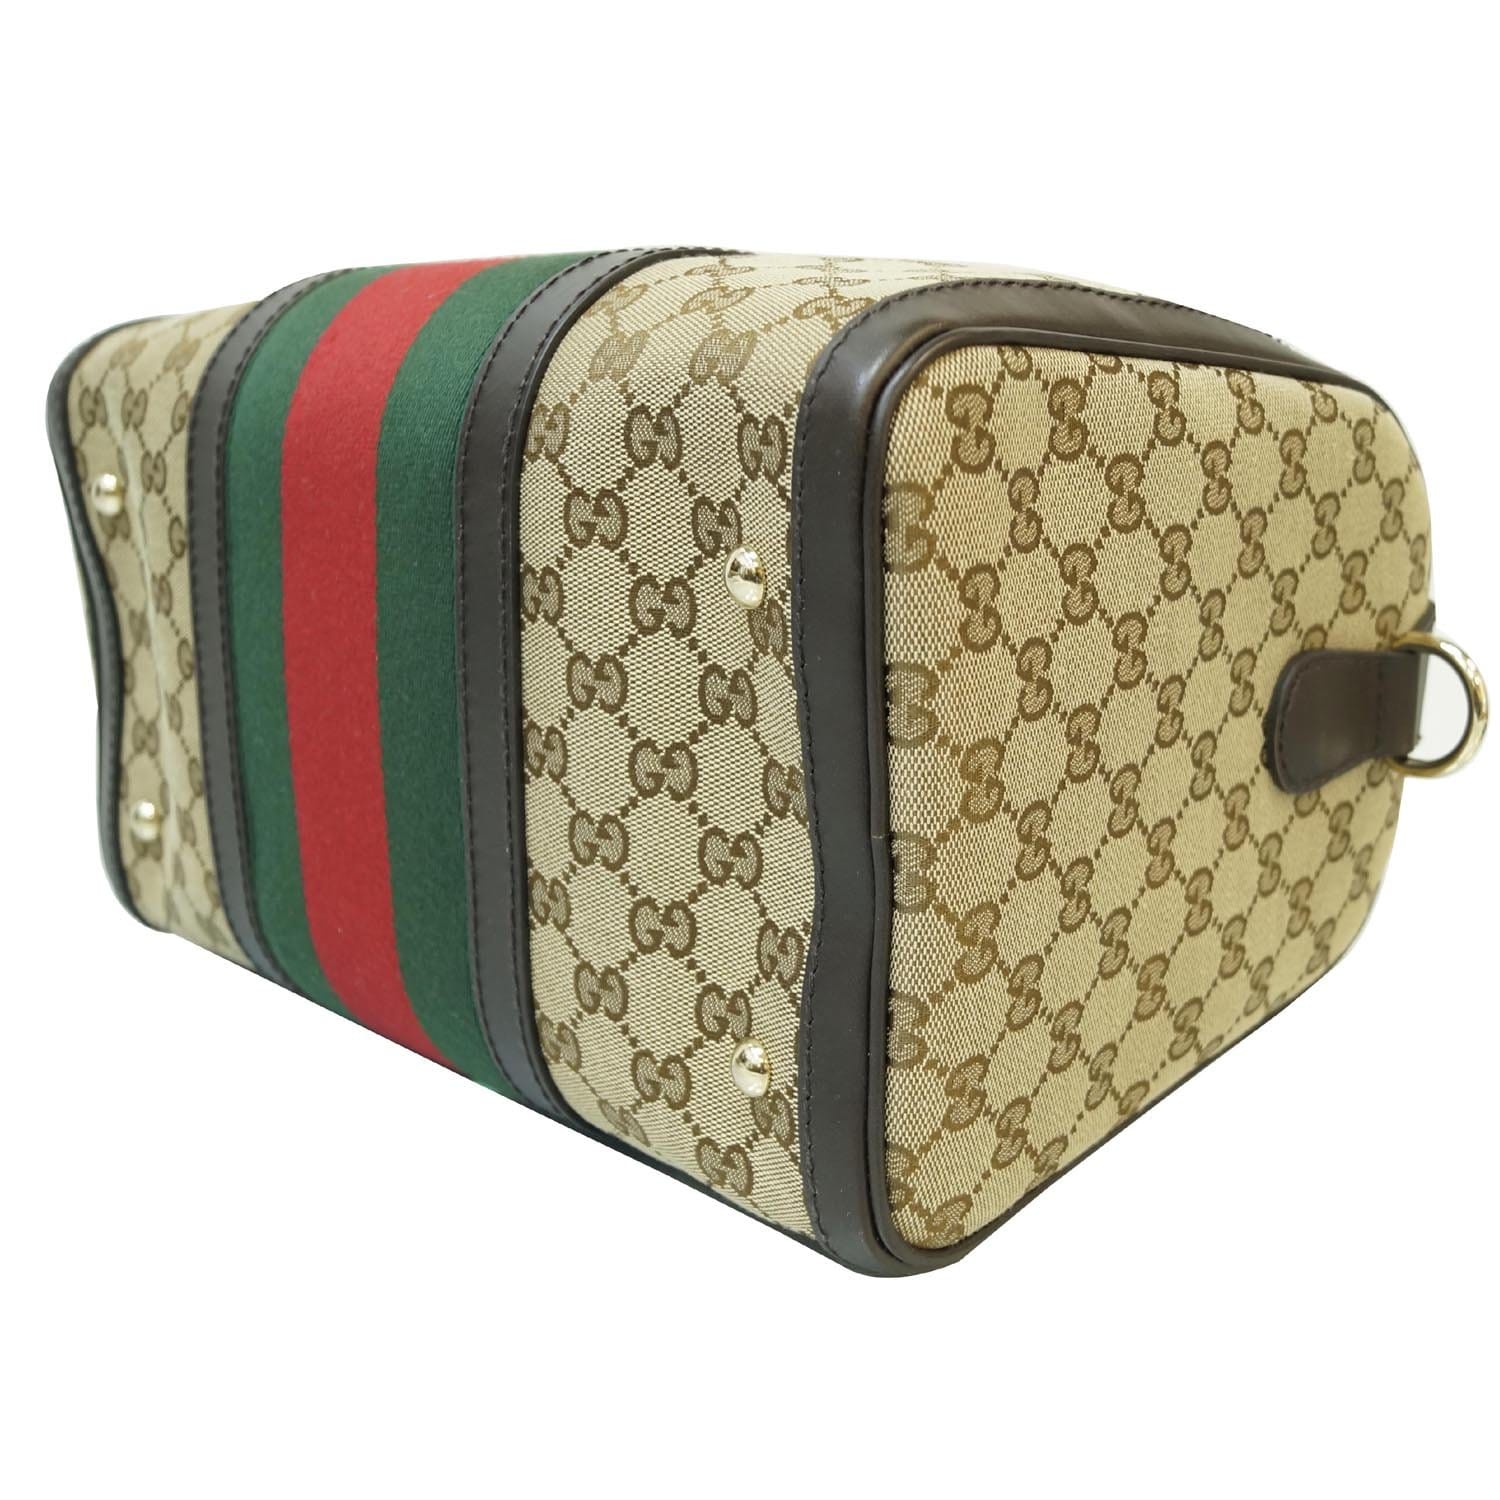 Authentic GUCCI Travel Case - Gucci MakeUp Case Bag - Vintage Gucci Beauty  Case